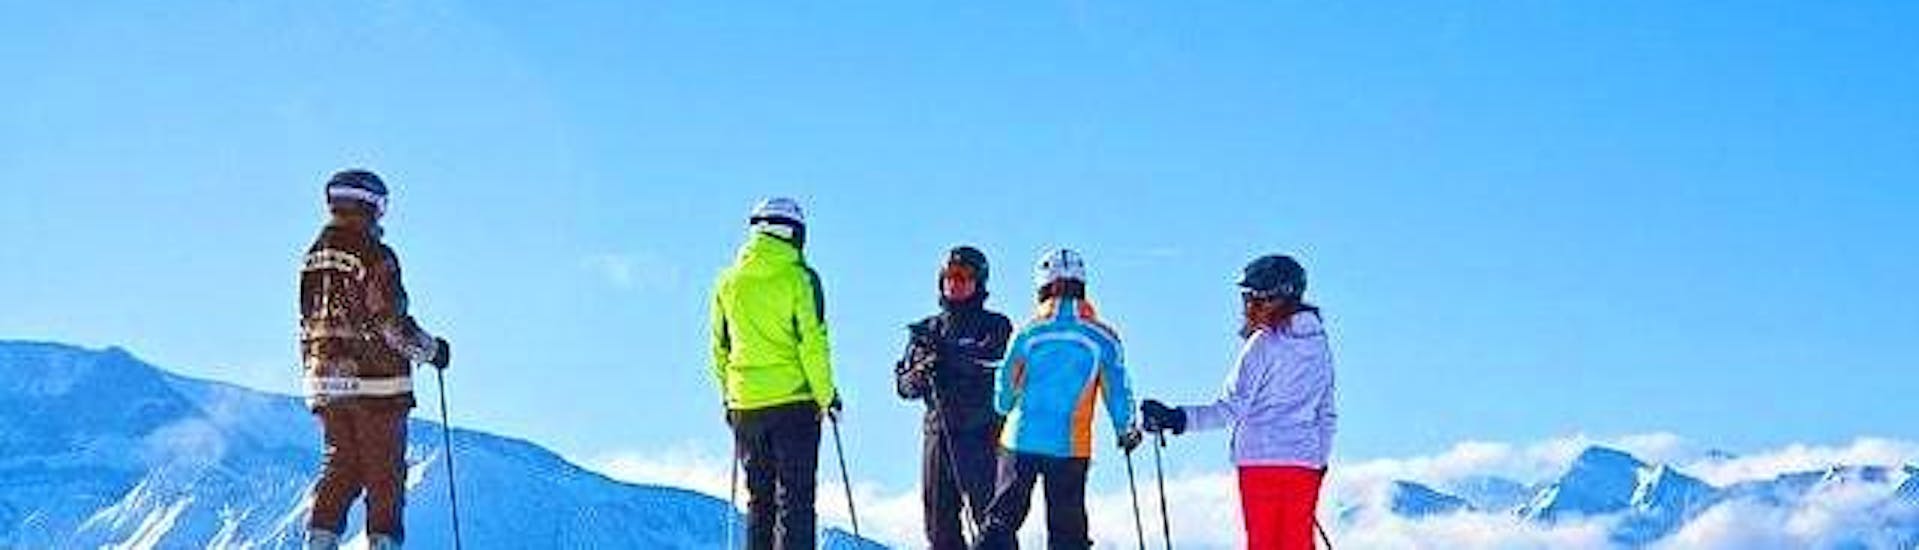 Lezioni di sci per adulti - Tutti i livelli della Scuola Italiana Sci Azzurra Folgarida si stanno svolgendo, il gruppo è pronto a scendere la pista.